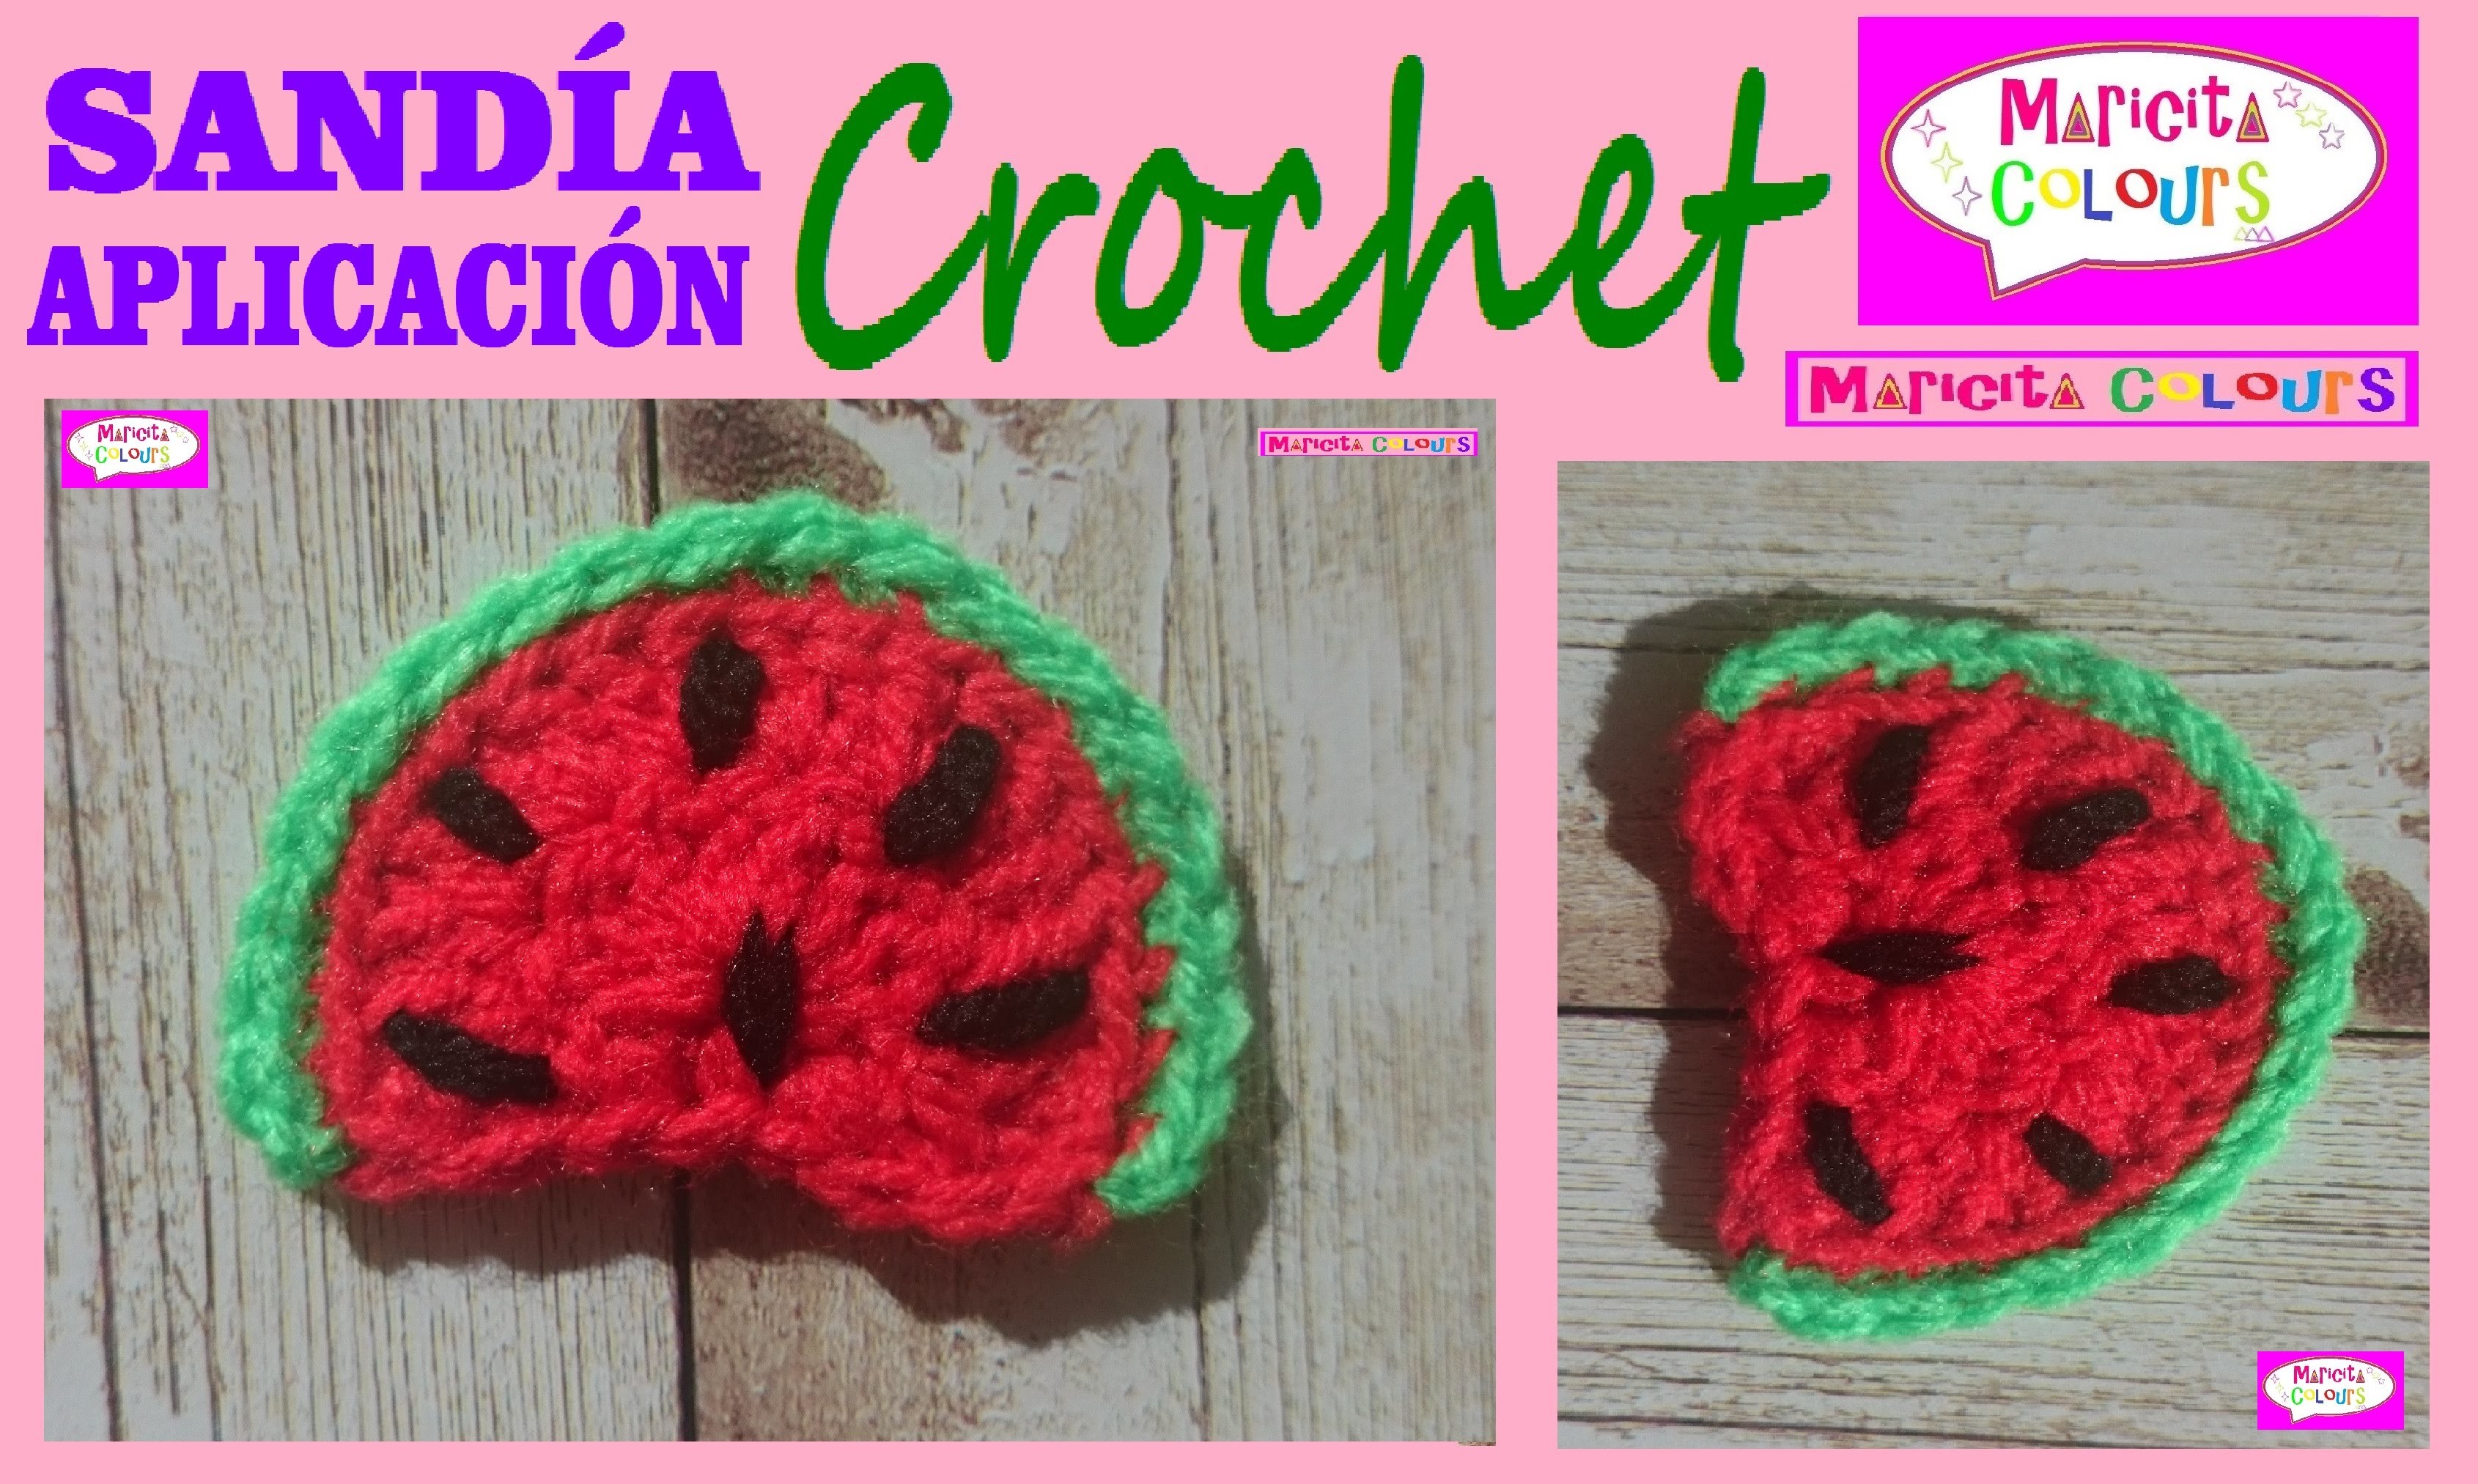 Sandía a Crochet Aplicación Tutorial Gratis por Maricita Colours